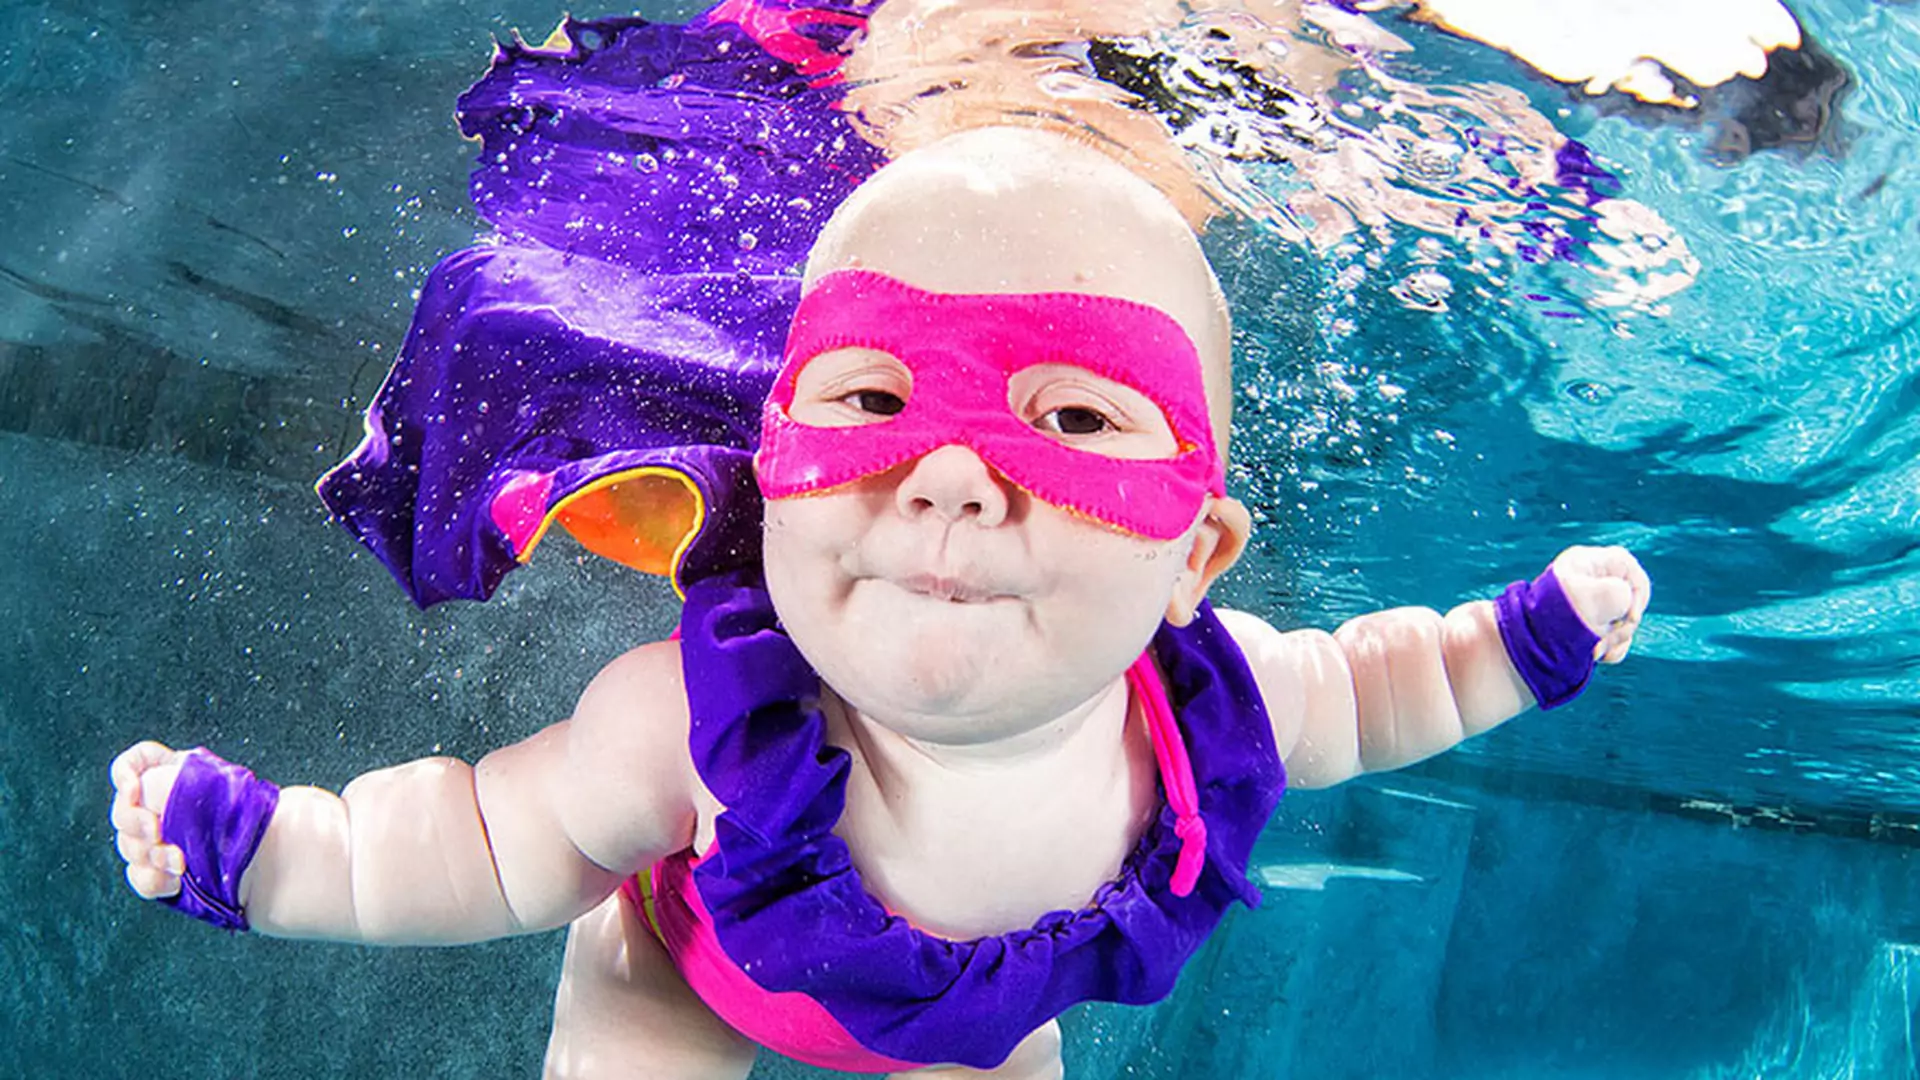 Podwodne bobasy! 10 rozkosznych zdjęć nurkujących maluchów ❤